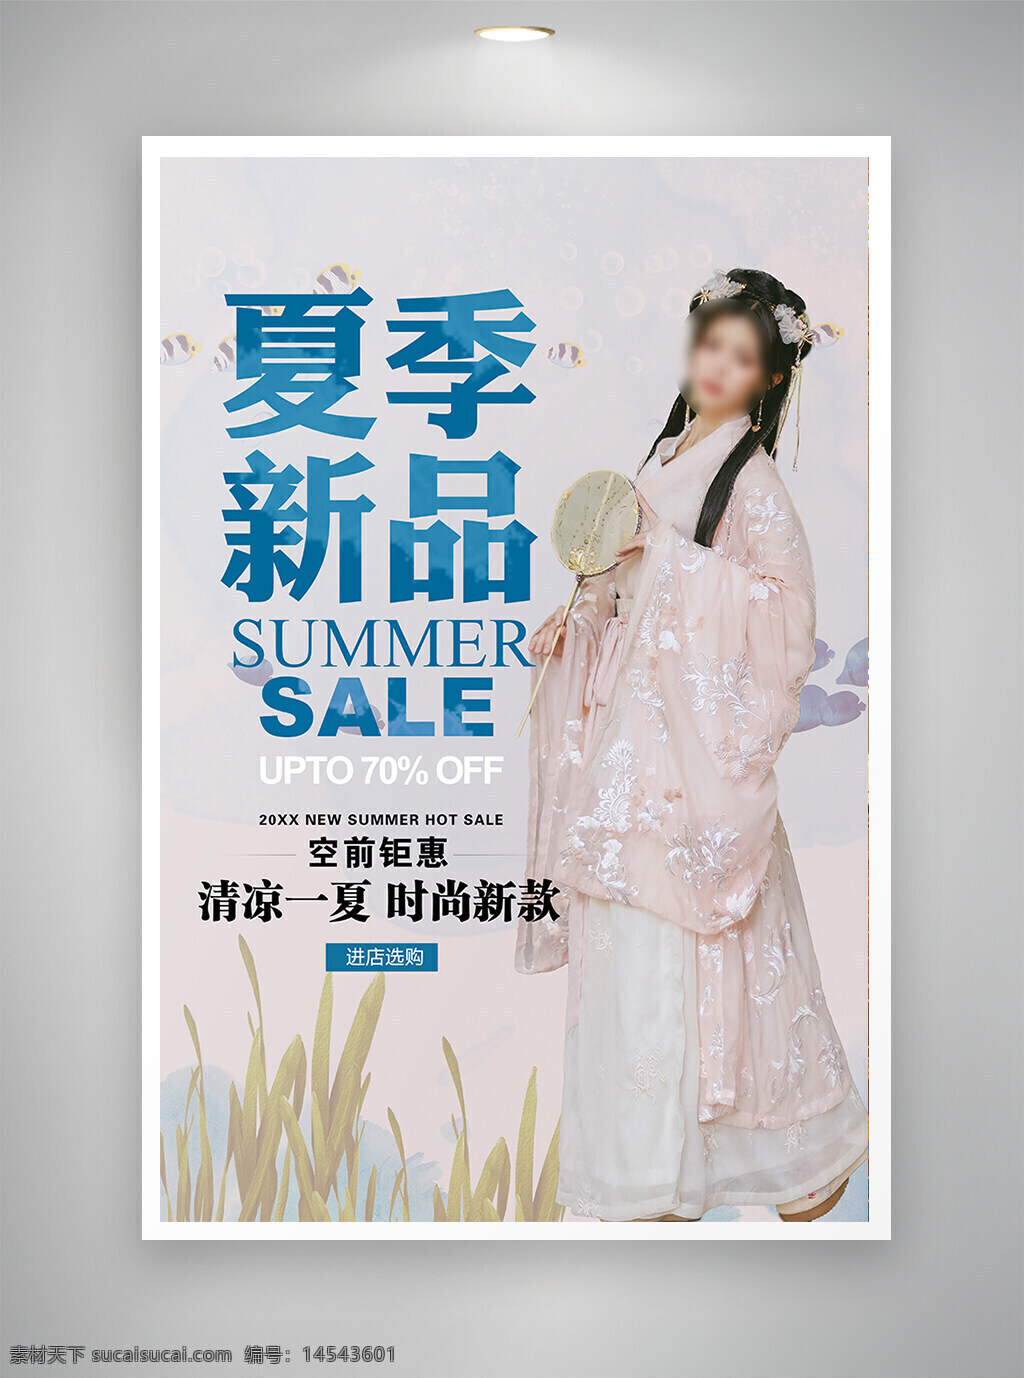 中国风海报 促销海报 节日海报 古风海报 夏季新品